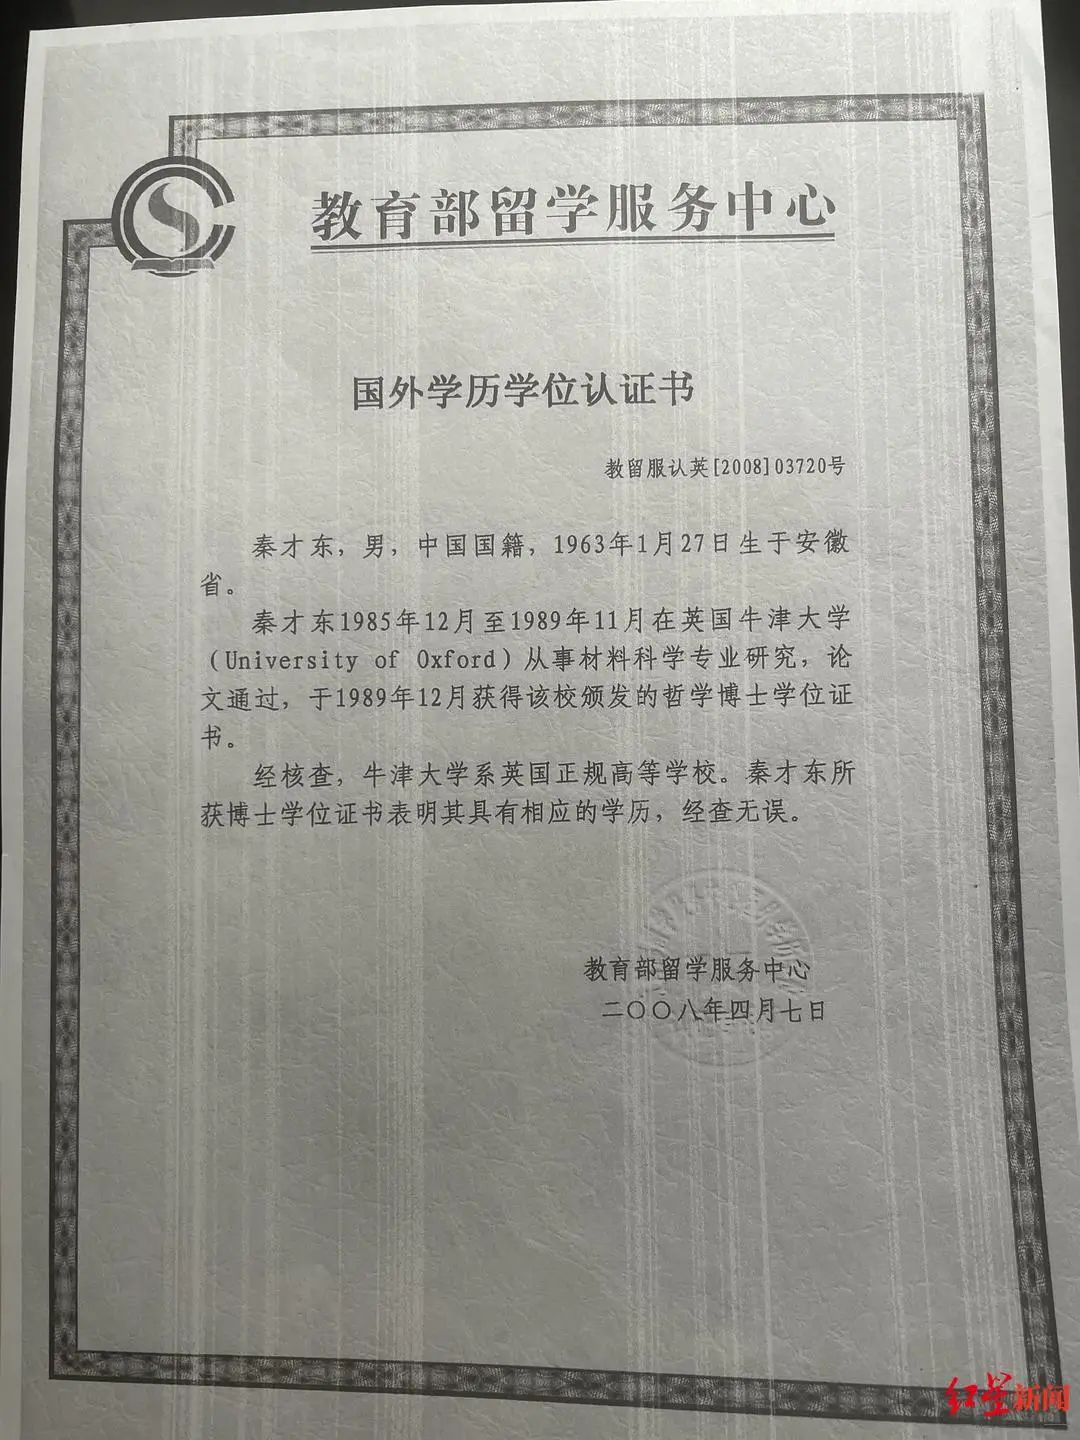 ↑教育部留学服务中心关于秦才东的国外学位认证书